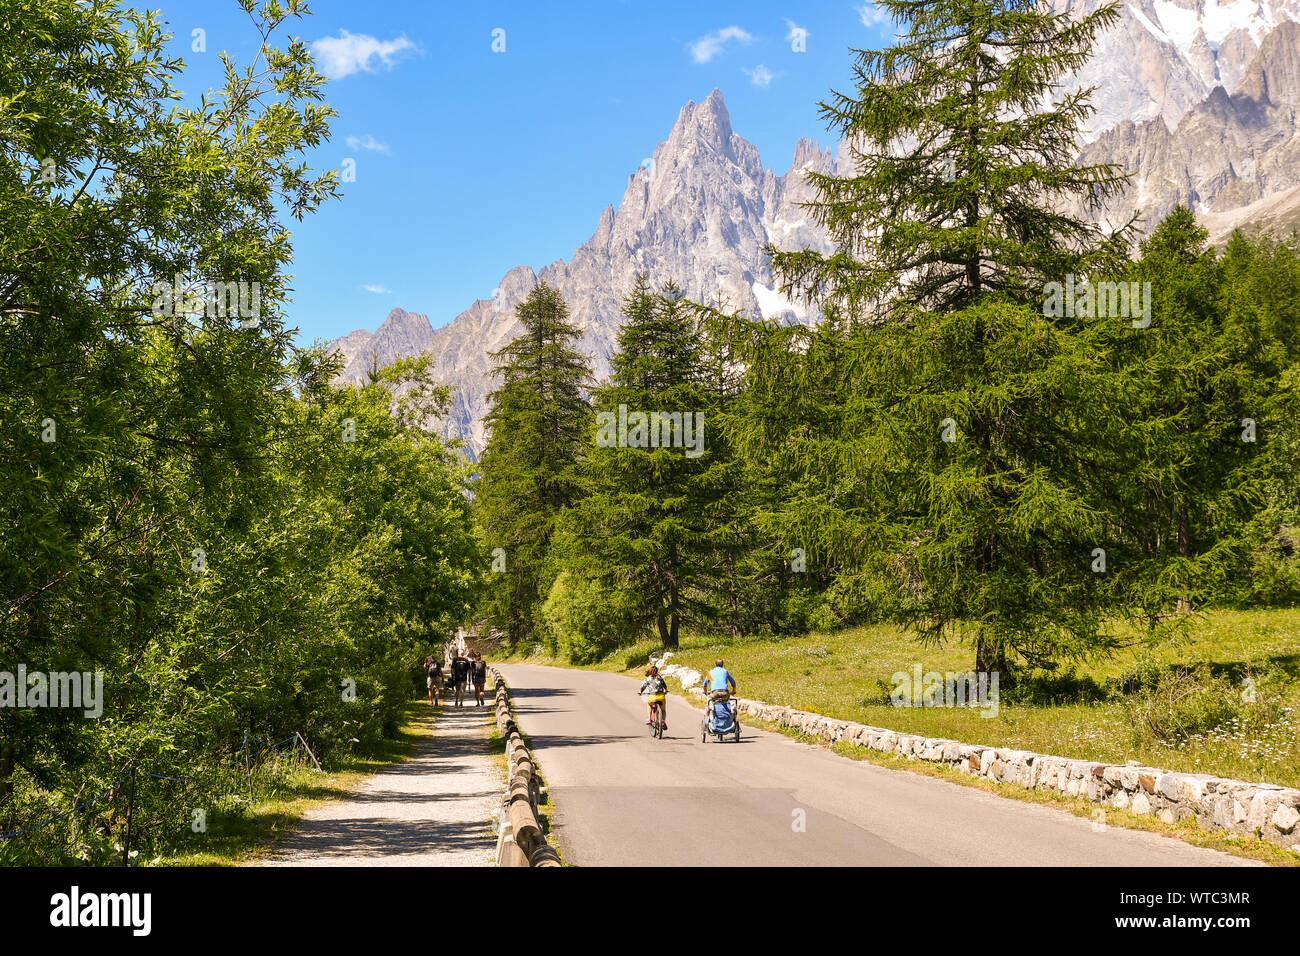 Vista della Val Ferret, una valle alpina ai piedi della catena montuosa del Monte Bianco con la Aiguille Noire di picco e di turisti, Courmayeur, Italia Foto Stock